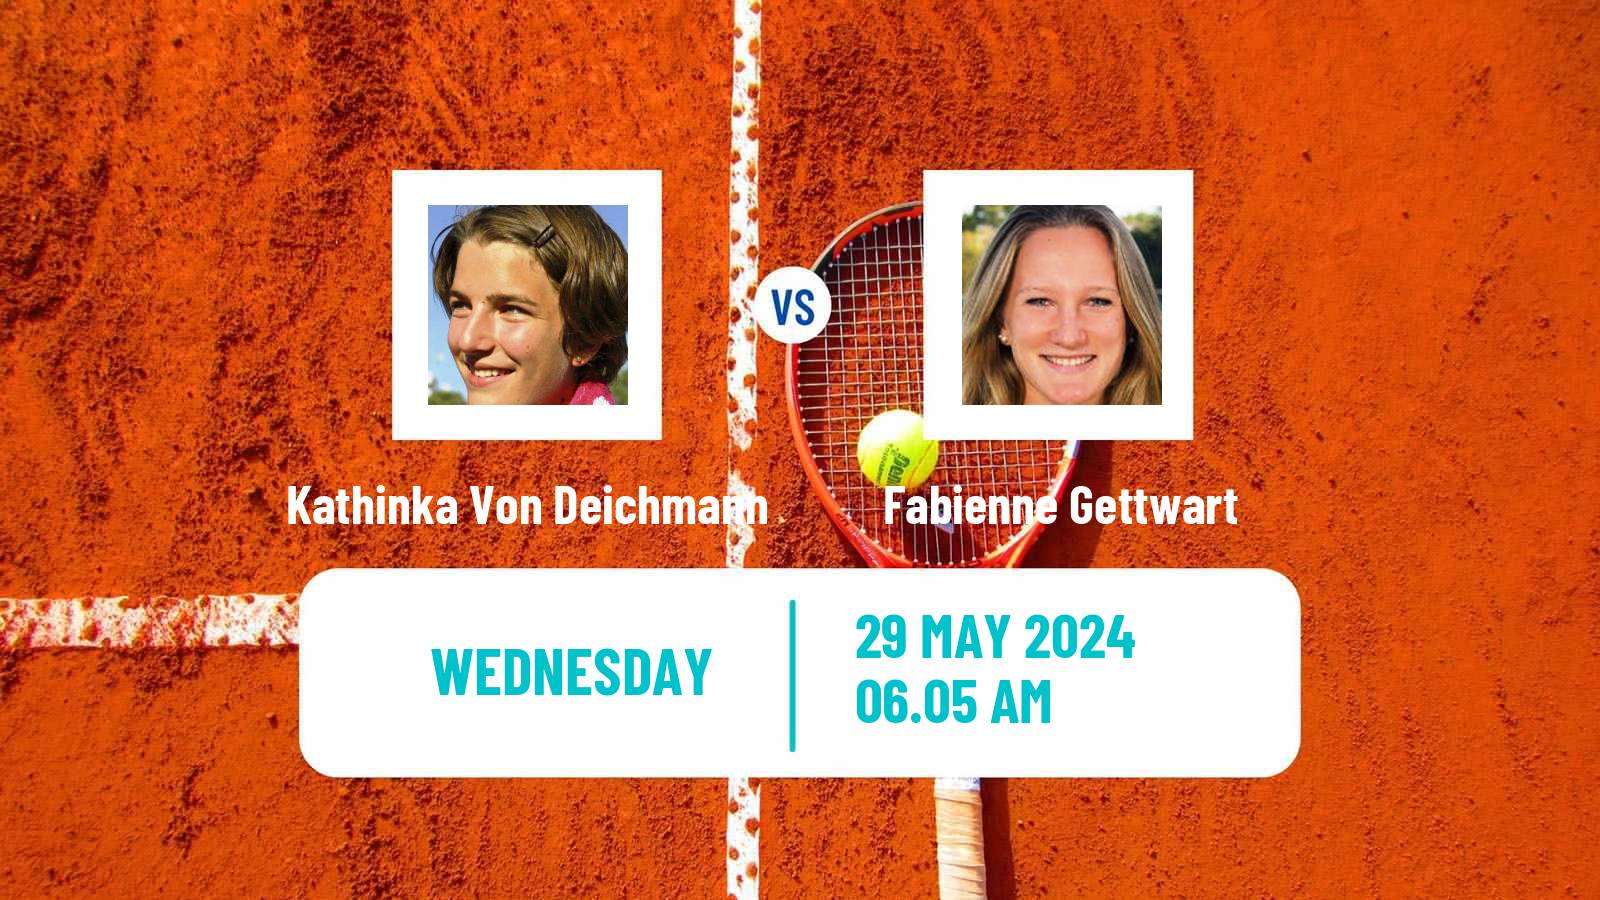 Tennis ITF W50 Troisdorf Women Kathinka Von Deichmann - Fabienne Gettwart